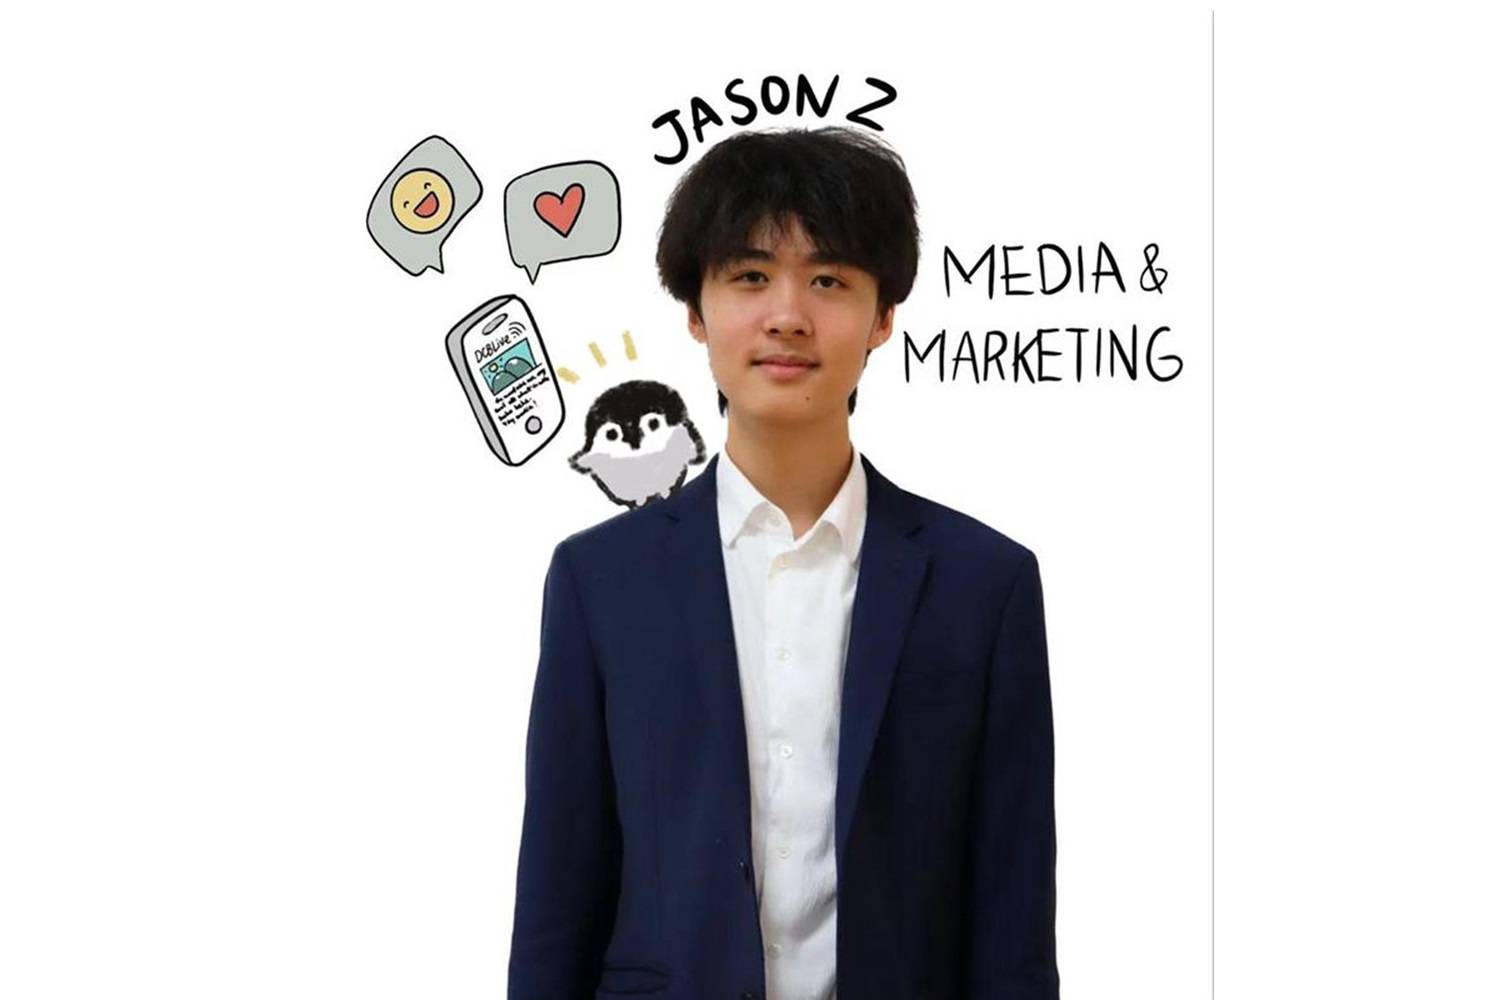 Media & Marketing Prefects: Jason Z